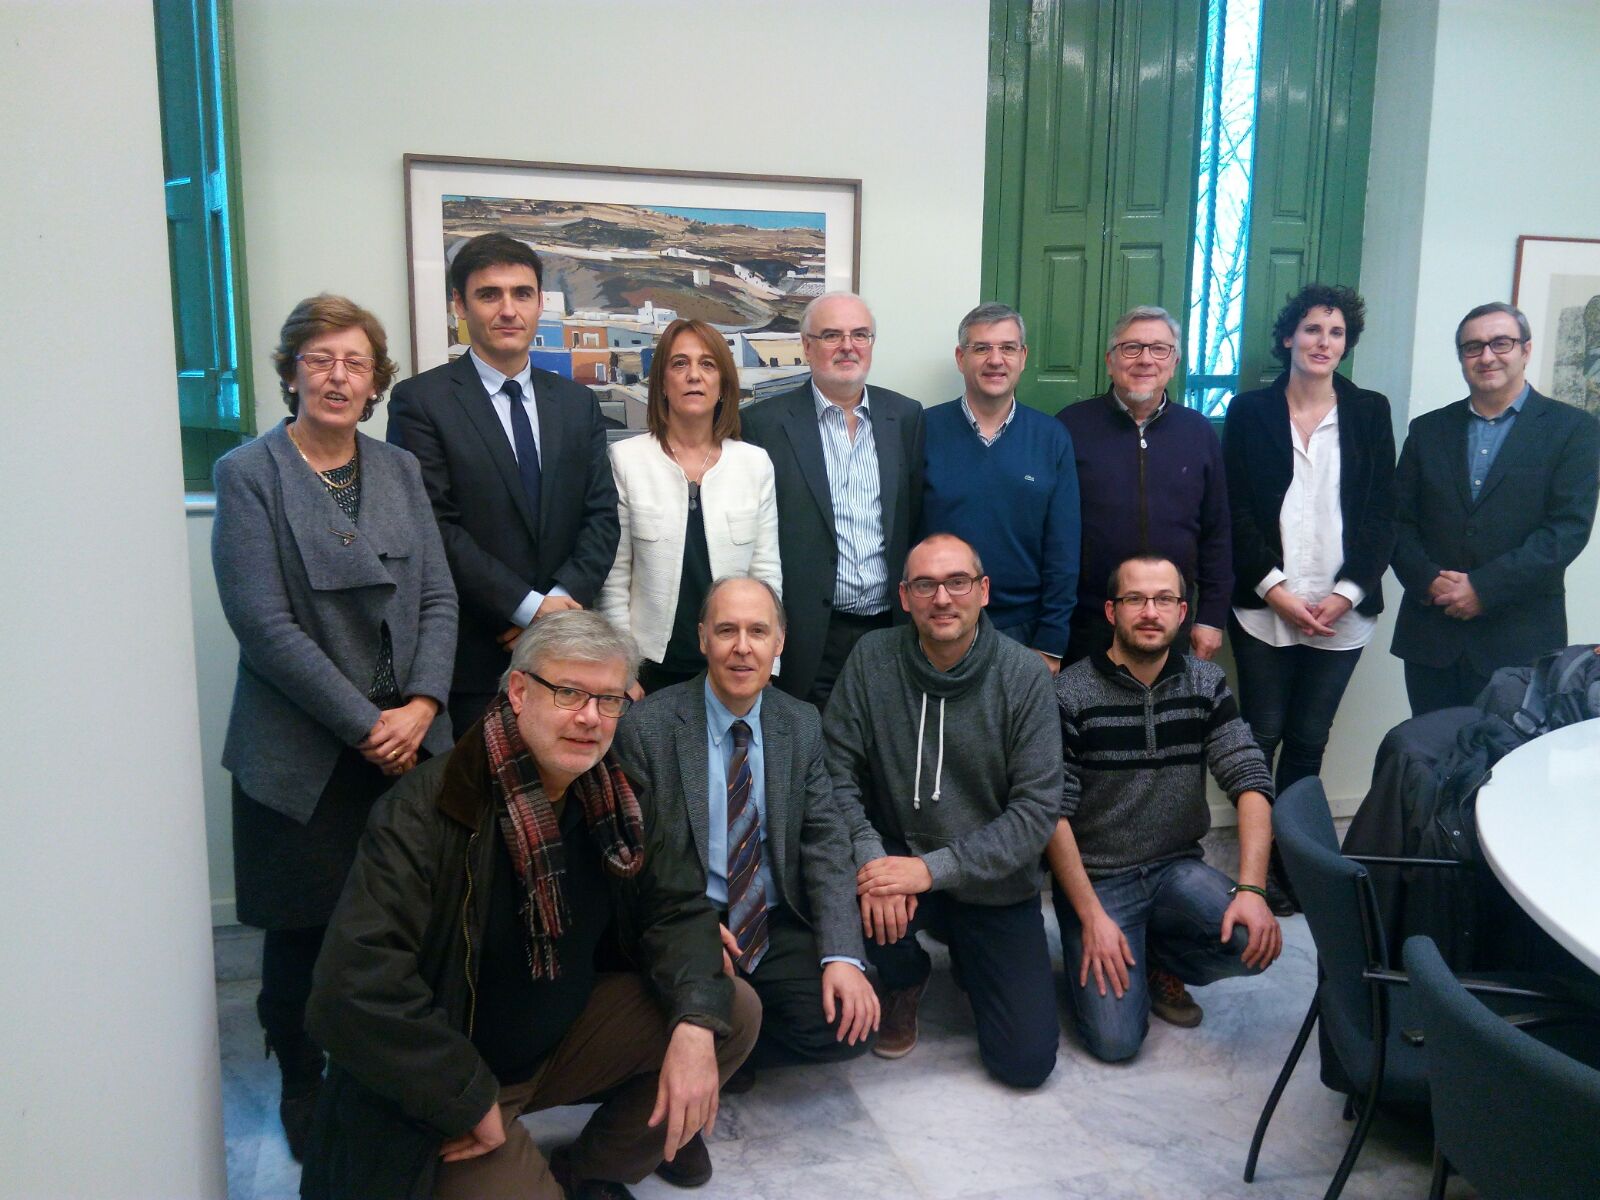 Participantes en la reunión entre DGA, Generalitat catalana, y universidades.